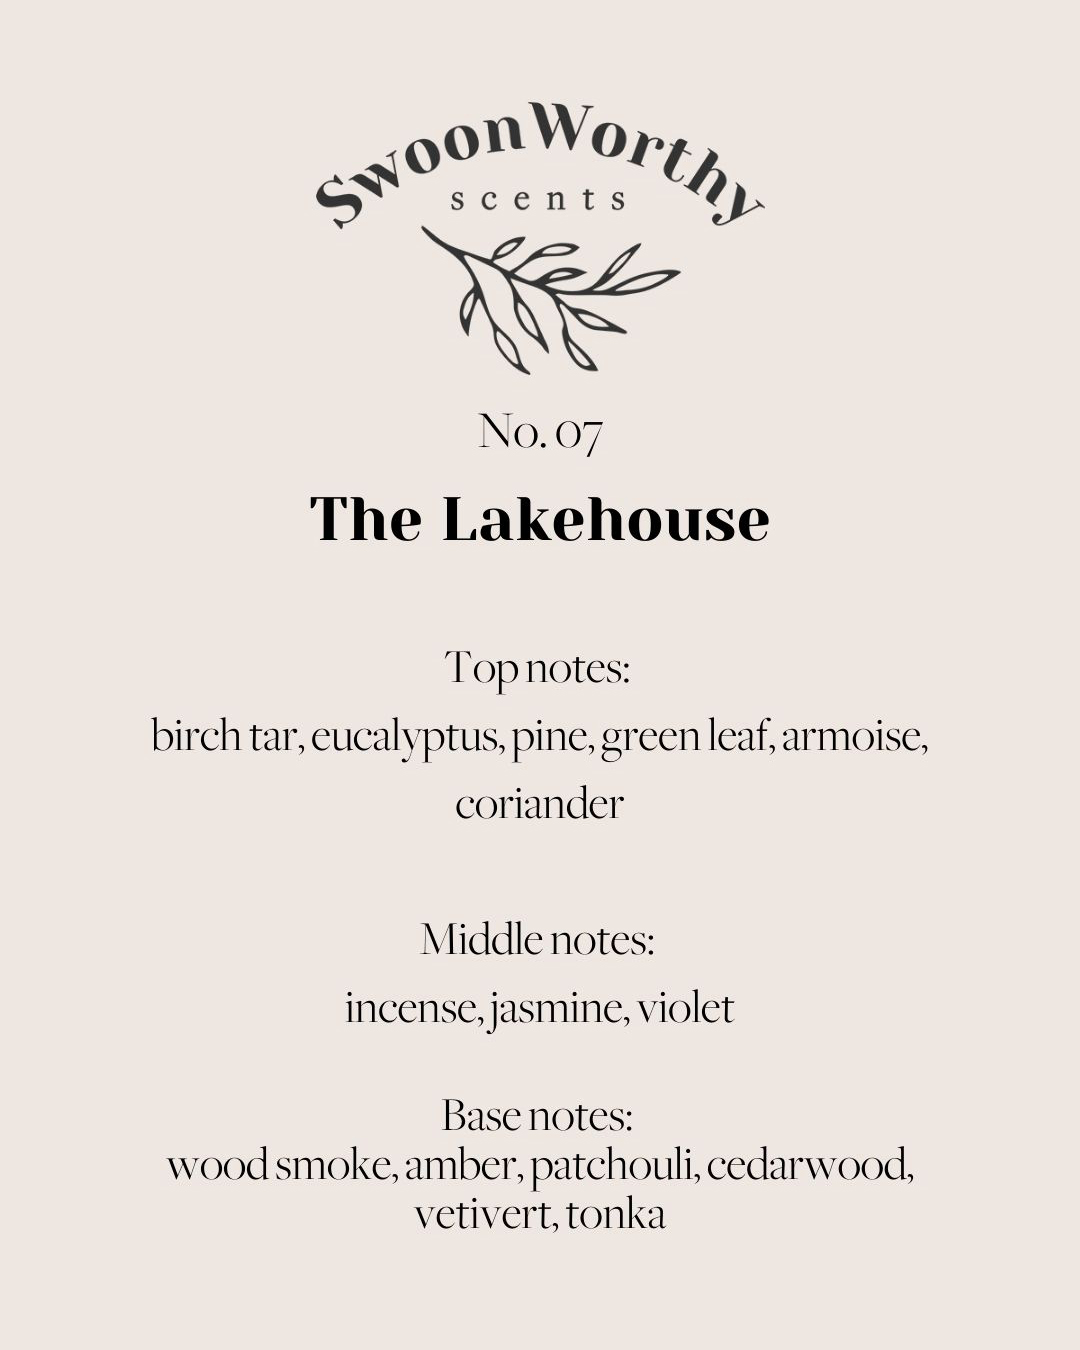 The Lakehouse Description